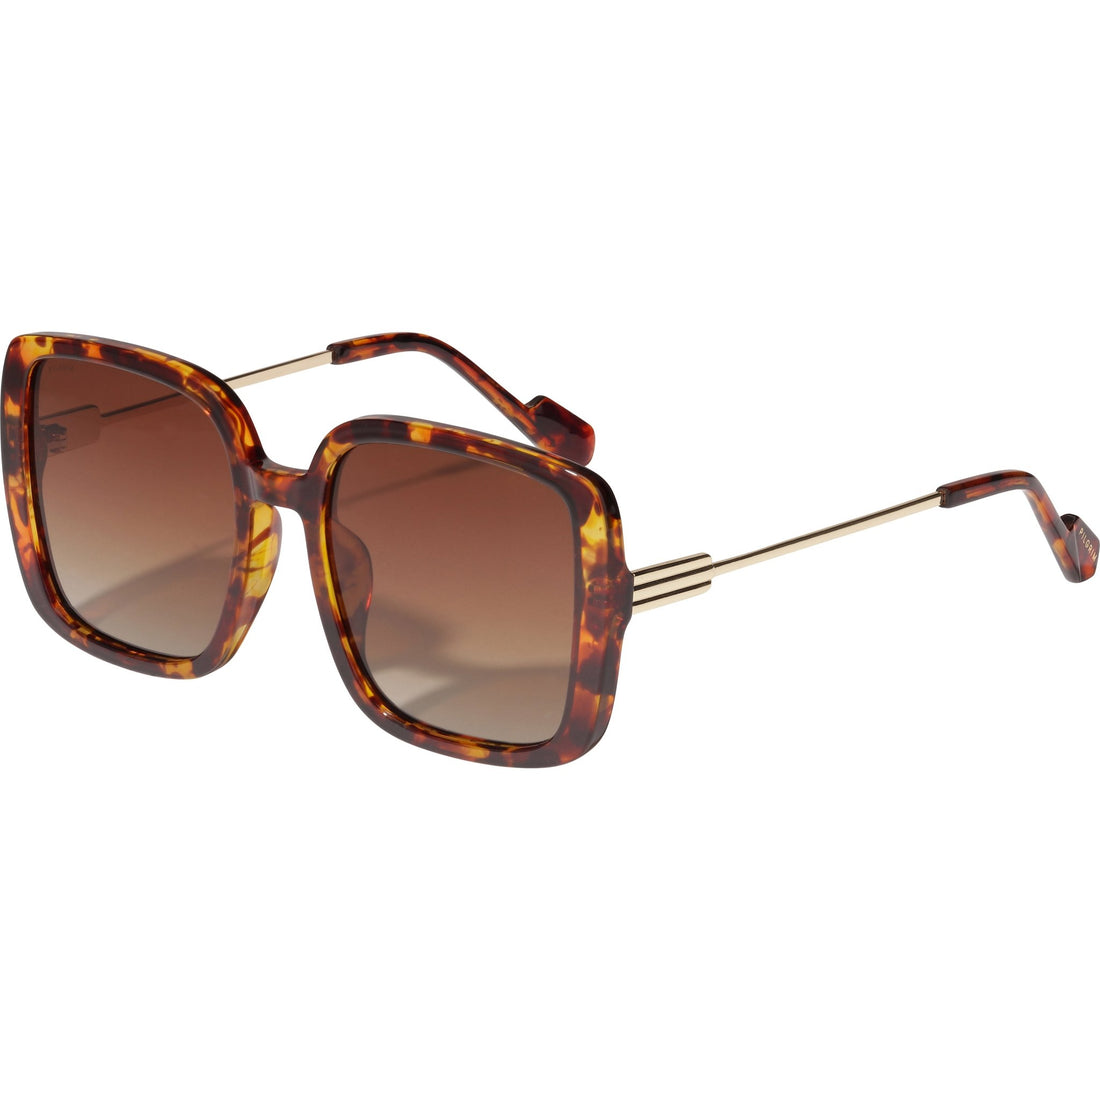 ALIET sunglasses tortoise brown/gold - PILGRIM